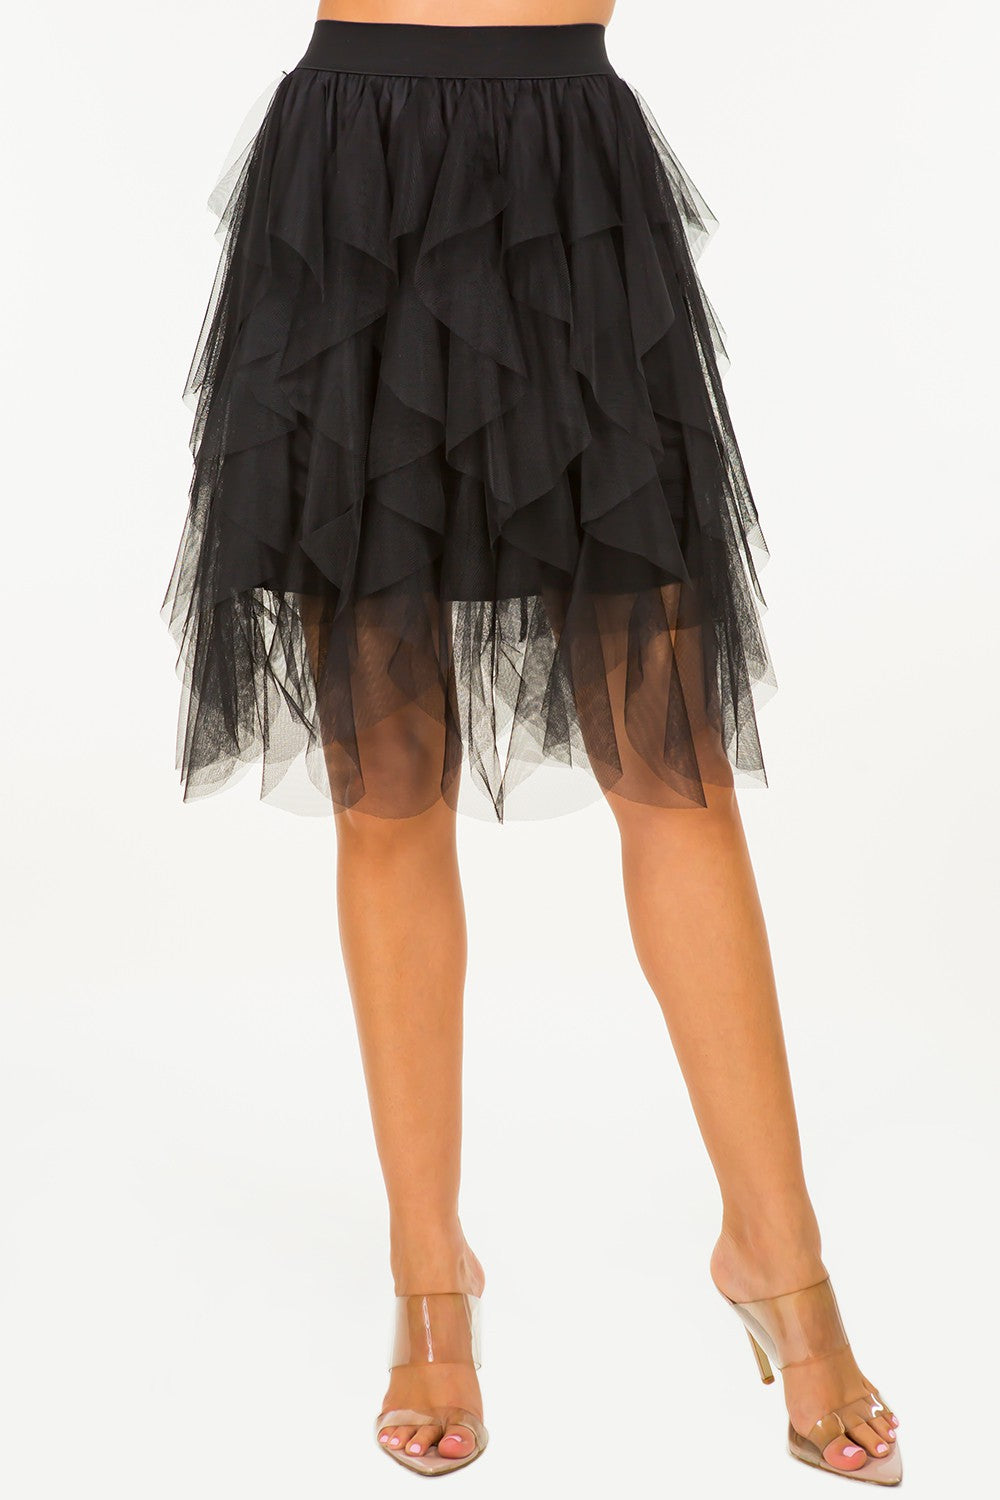 Jessica Tulle Skirt Short (Black)